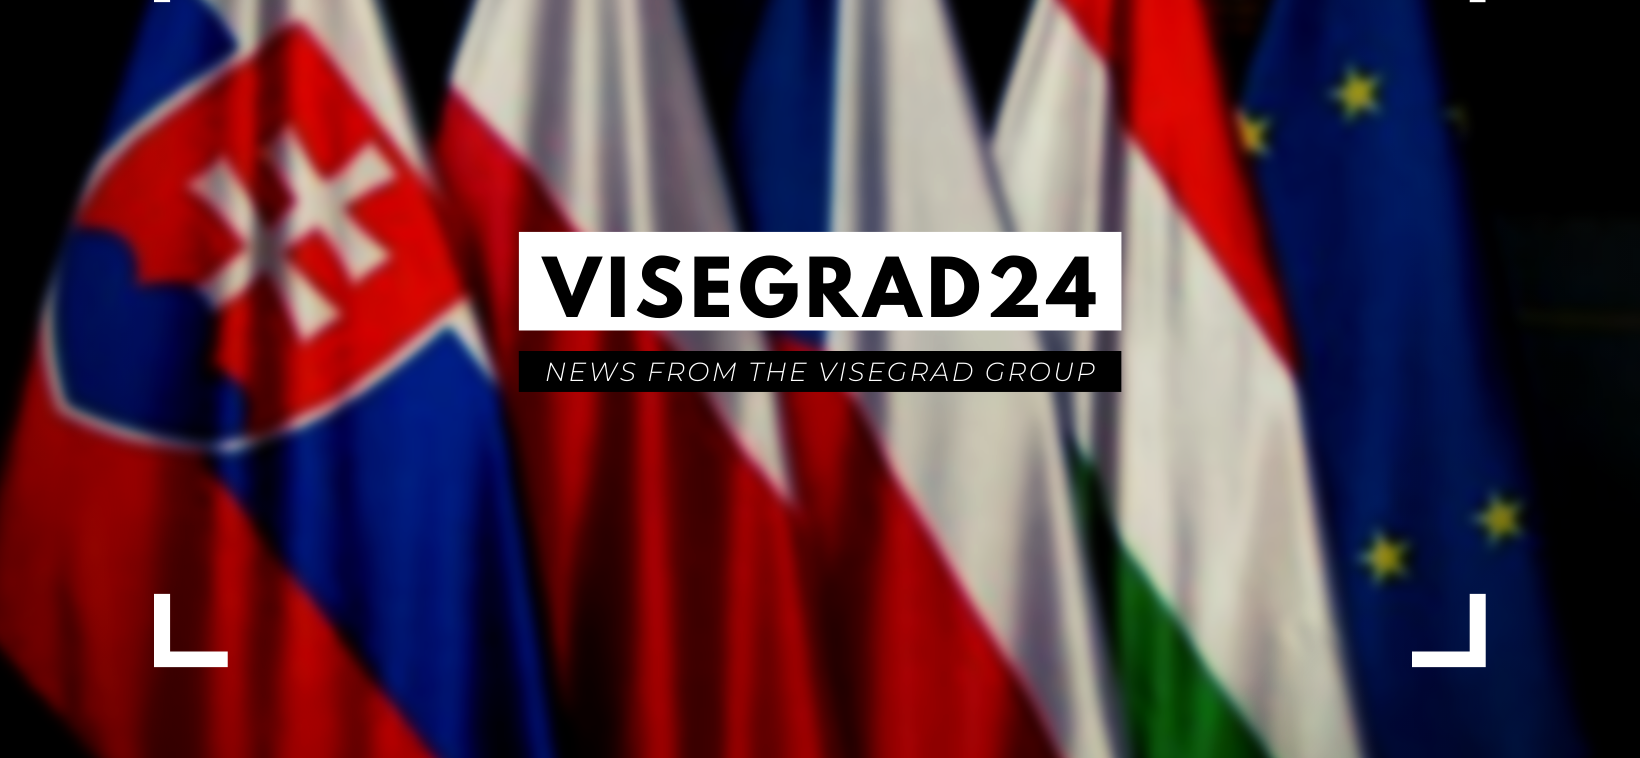 Visegrad24, contul de Twitter citat de mulți, dar în care puțini ar trebui să se încreadă